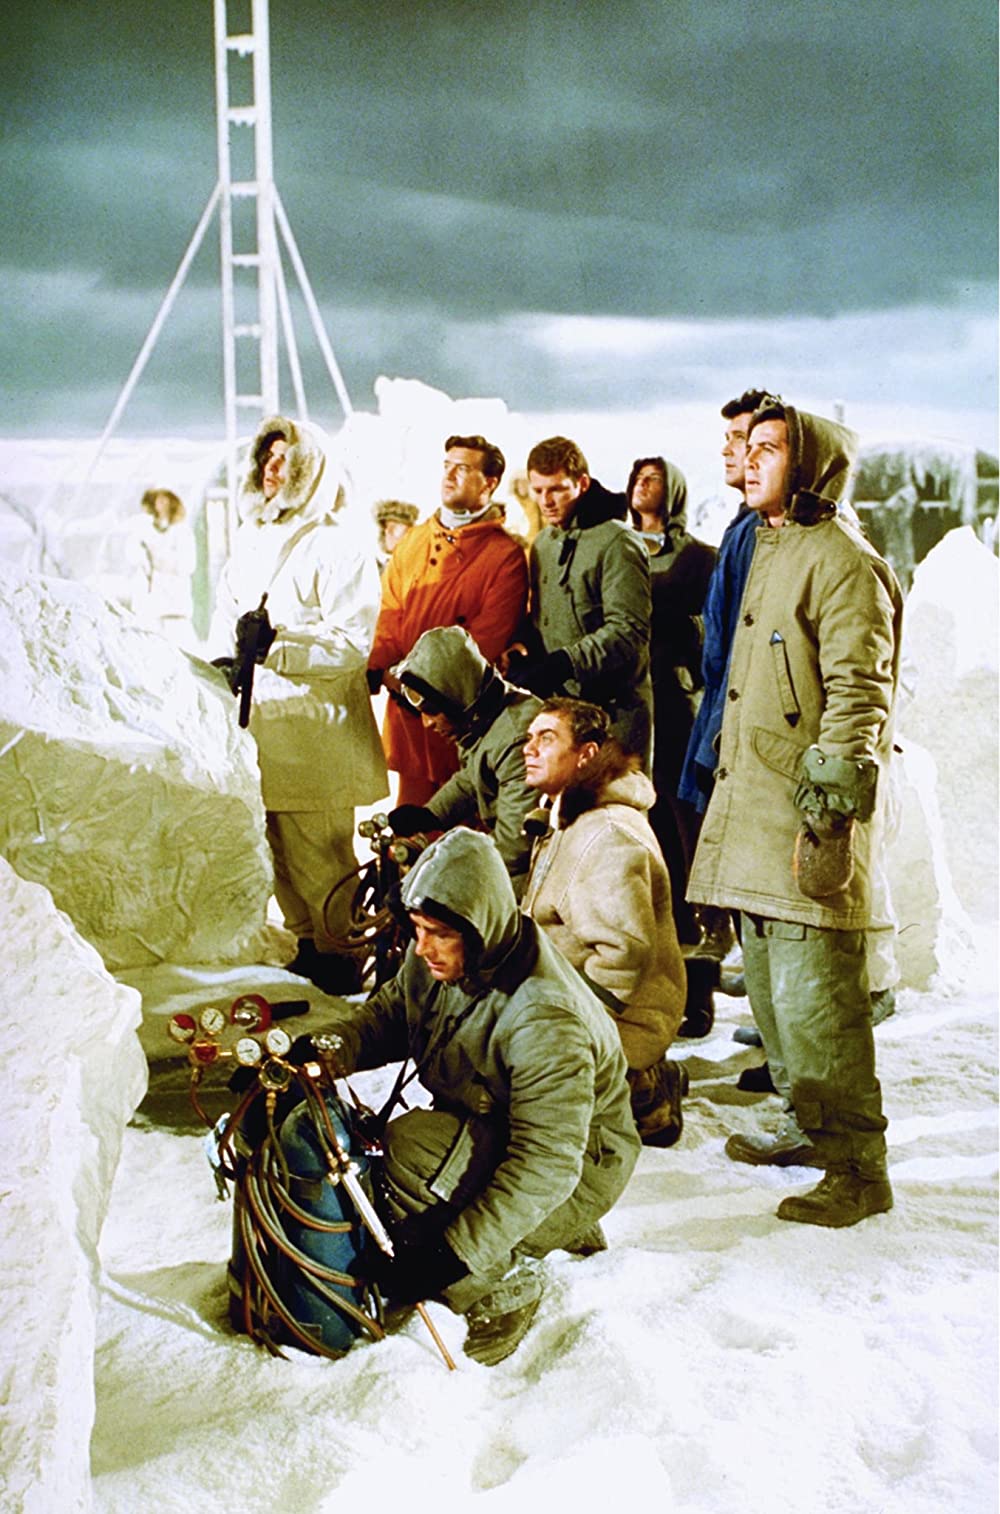 「北極の基地／潜航大作戦」アーネスト・ボーグナイン & ロック・ハドソン & Jed Allan & トニー・ビル & ロン・マサクの画像